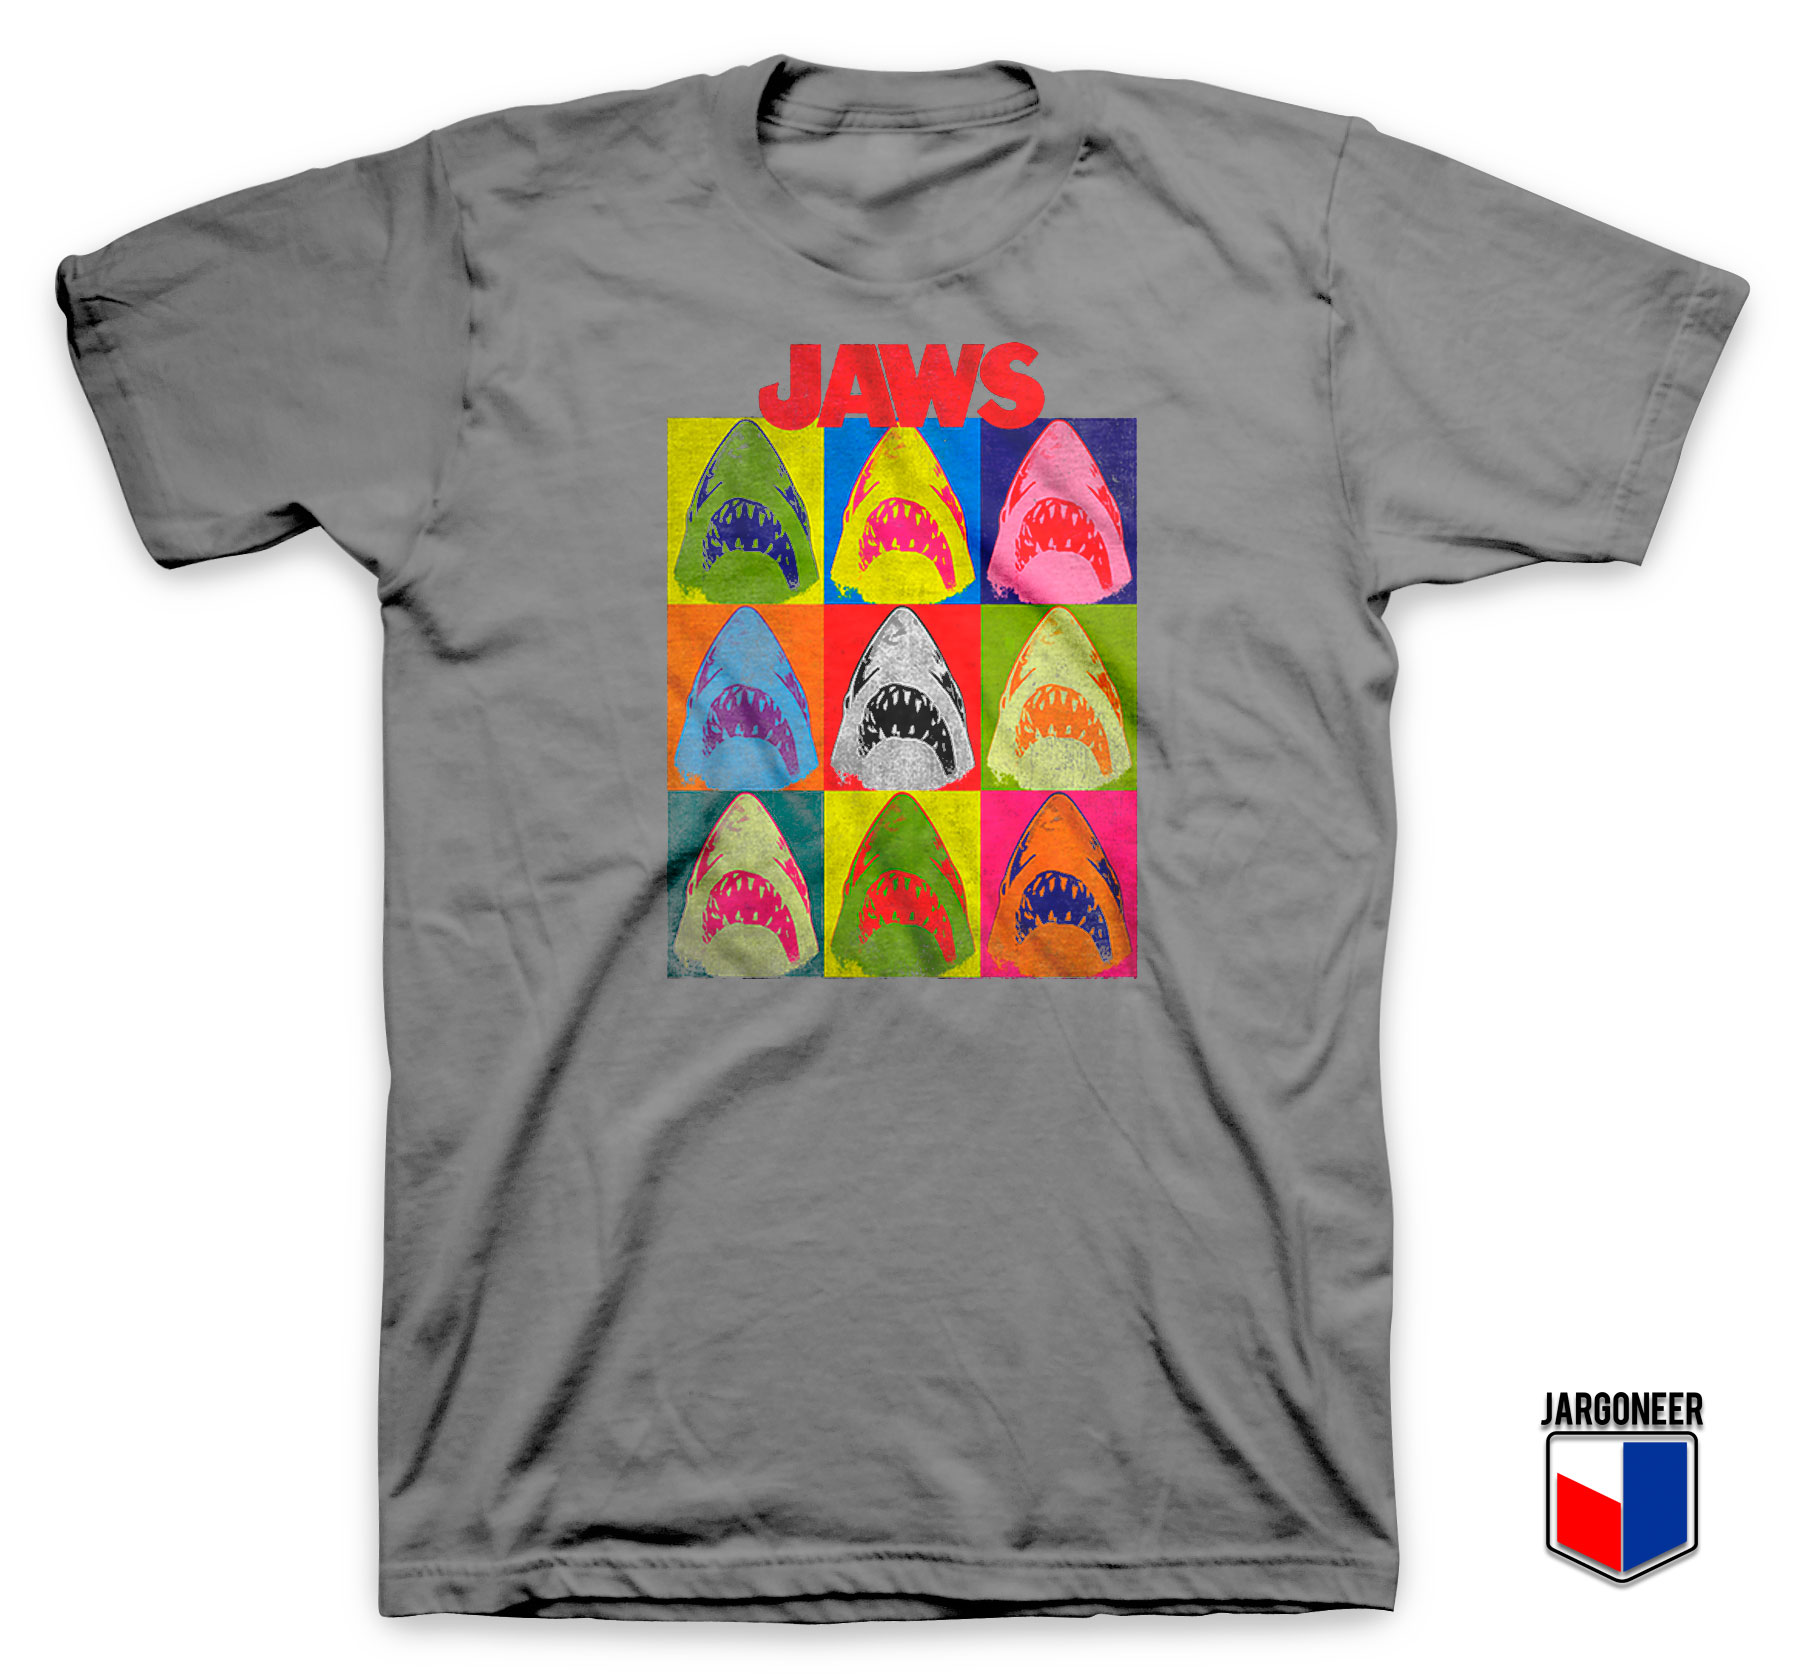 Jaws Pop Art T Shirt - Shop Unique Graphic Cool Shirt Designs